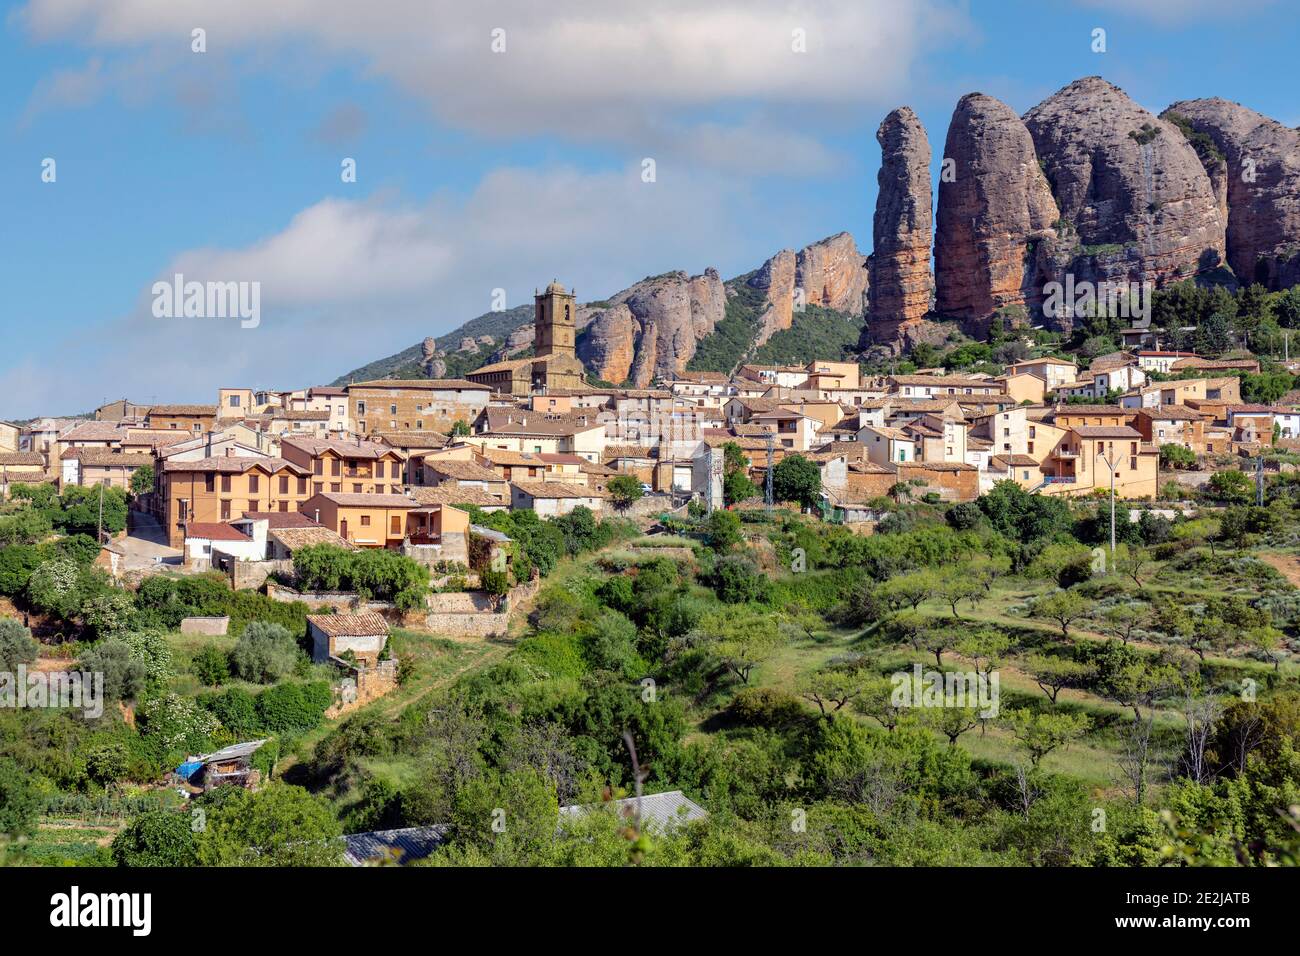 Villaggio di Agüero sotto le formazioni rocciose conglomerate dei Mallos de Riglos, provincia di Huesca, Aragona, Spagna. I Mallos de Riglos sono approssimativamente Foto Stock